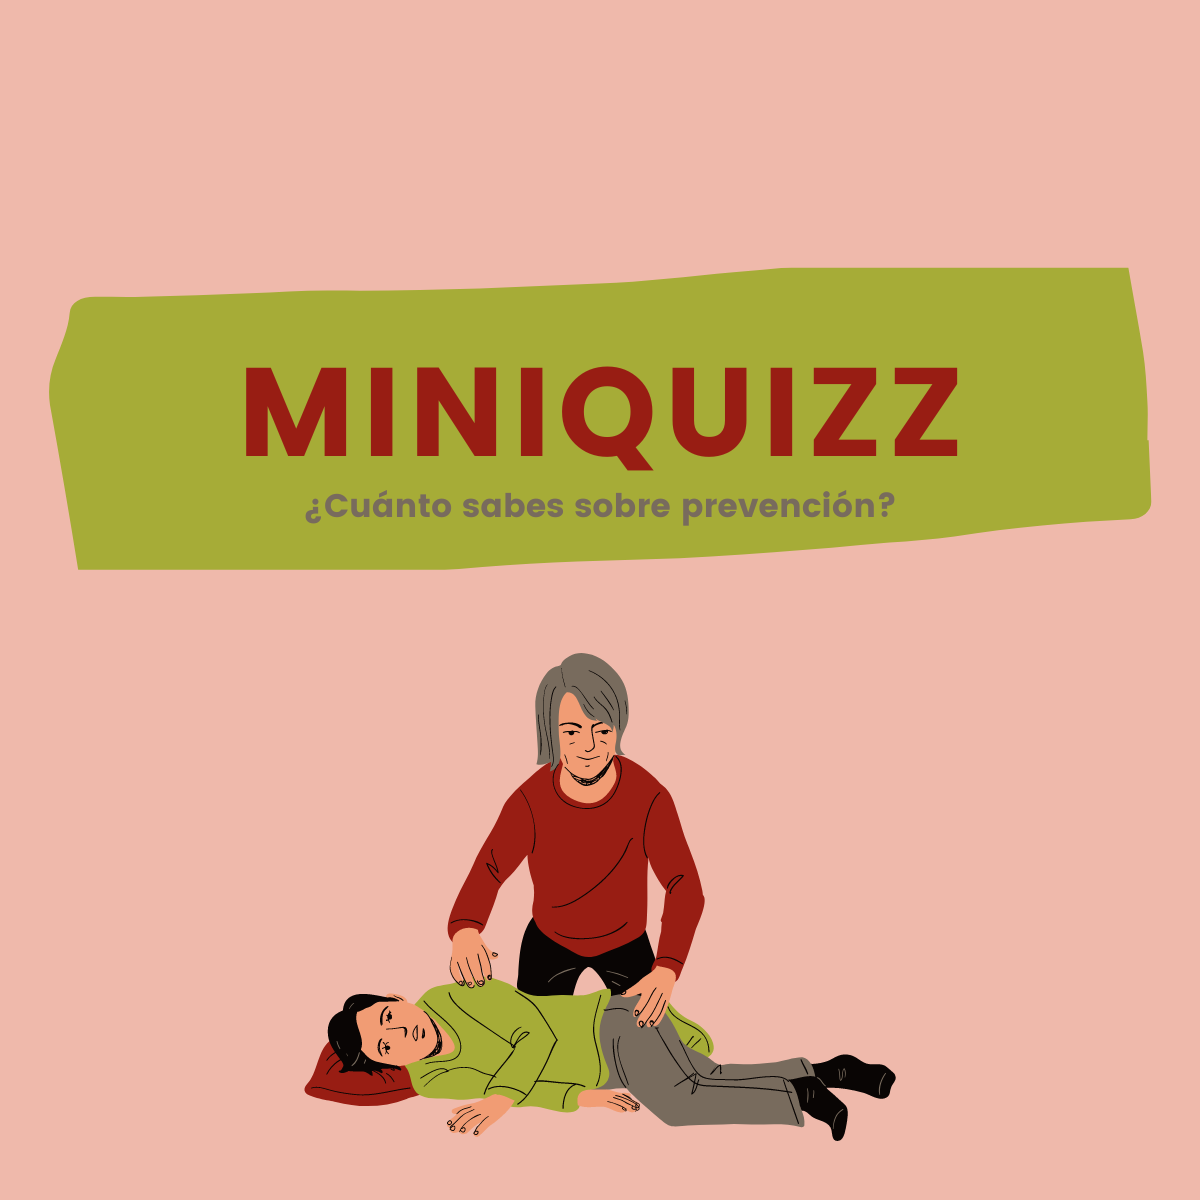 Miniquizz: Primeros auxilios